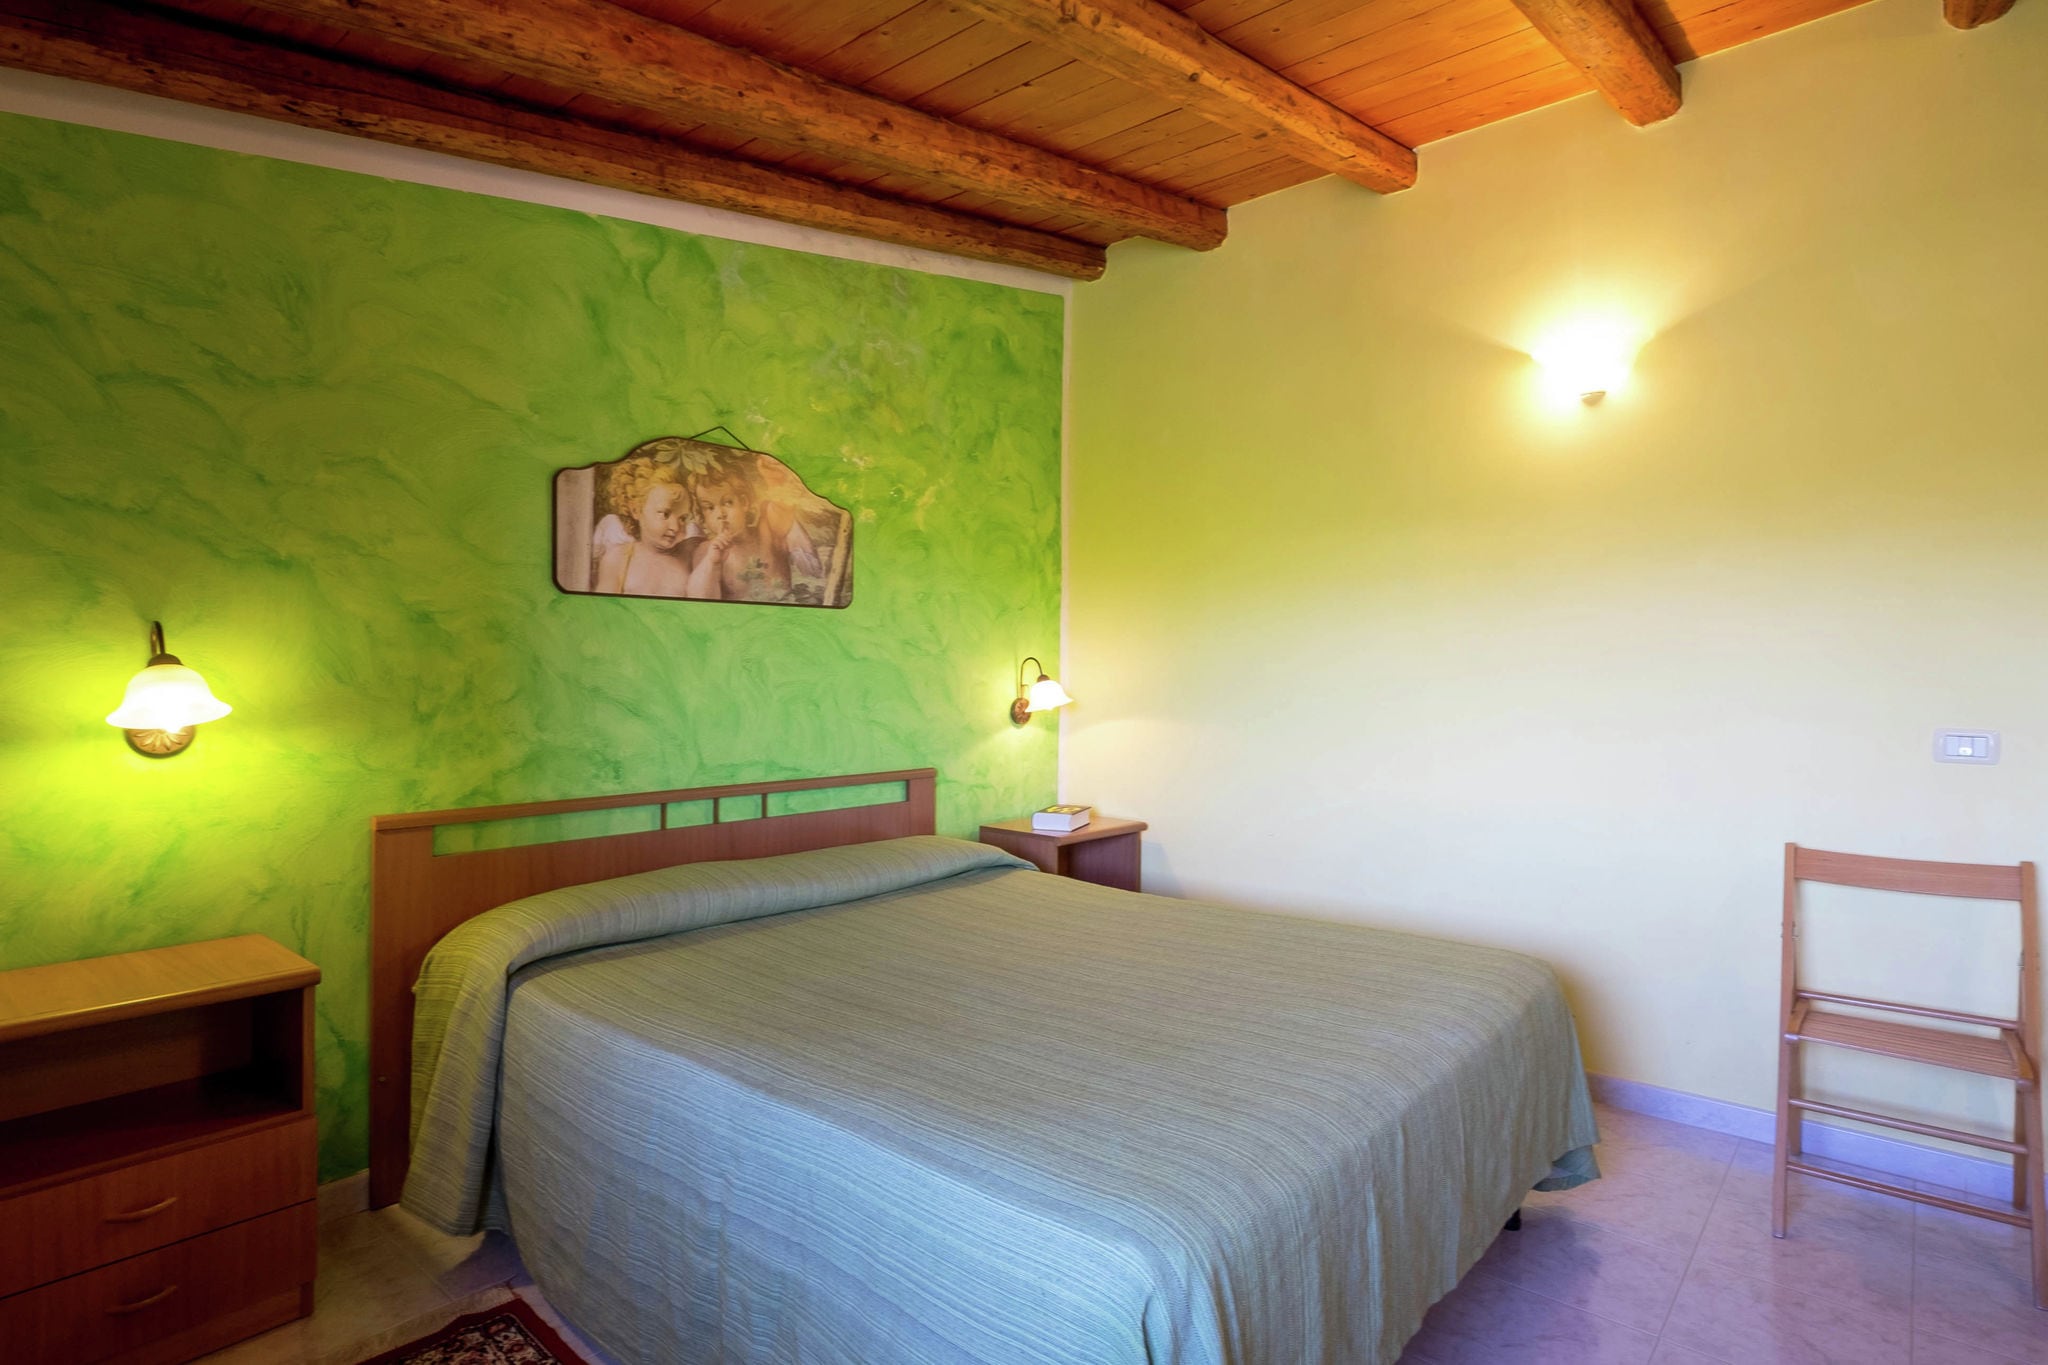 Une maison de vacances ensoleillée à Sciacca, Sicile